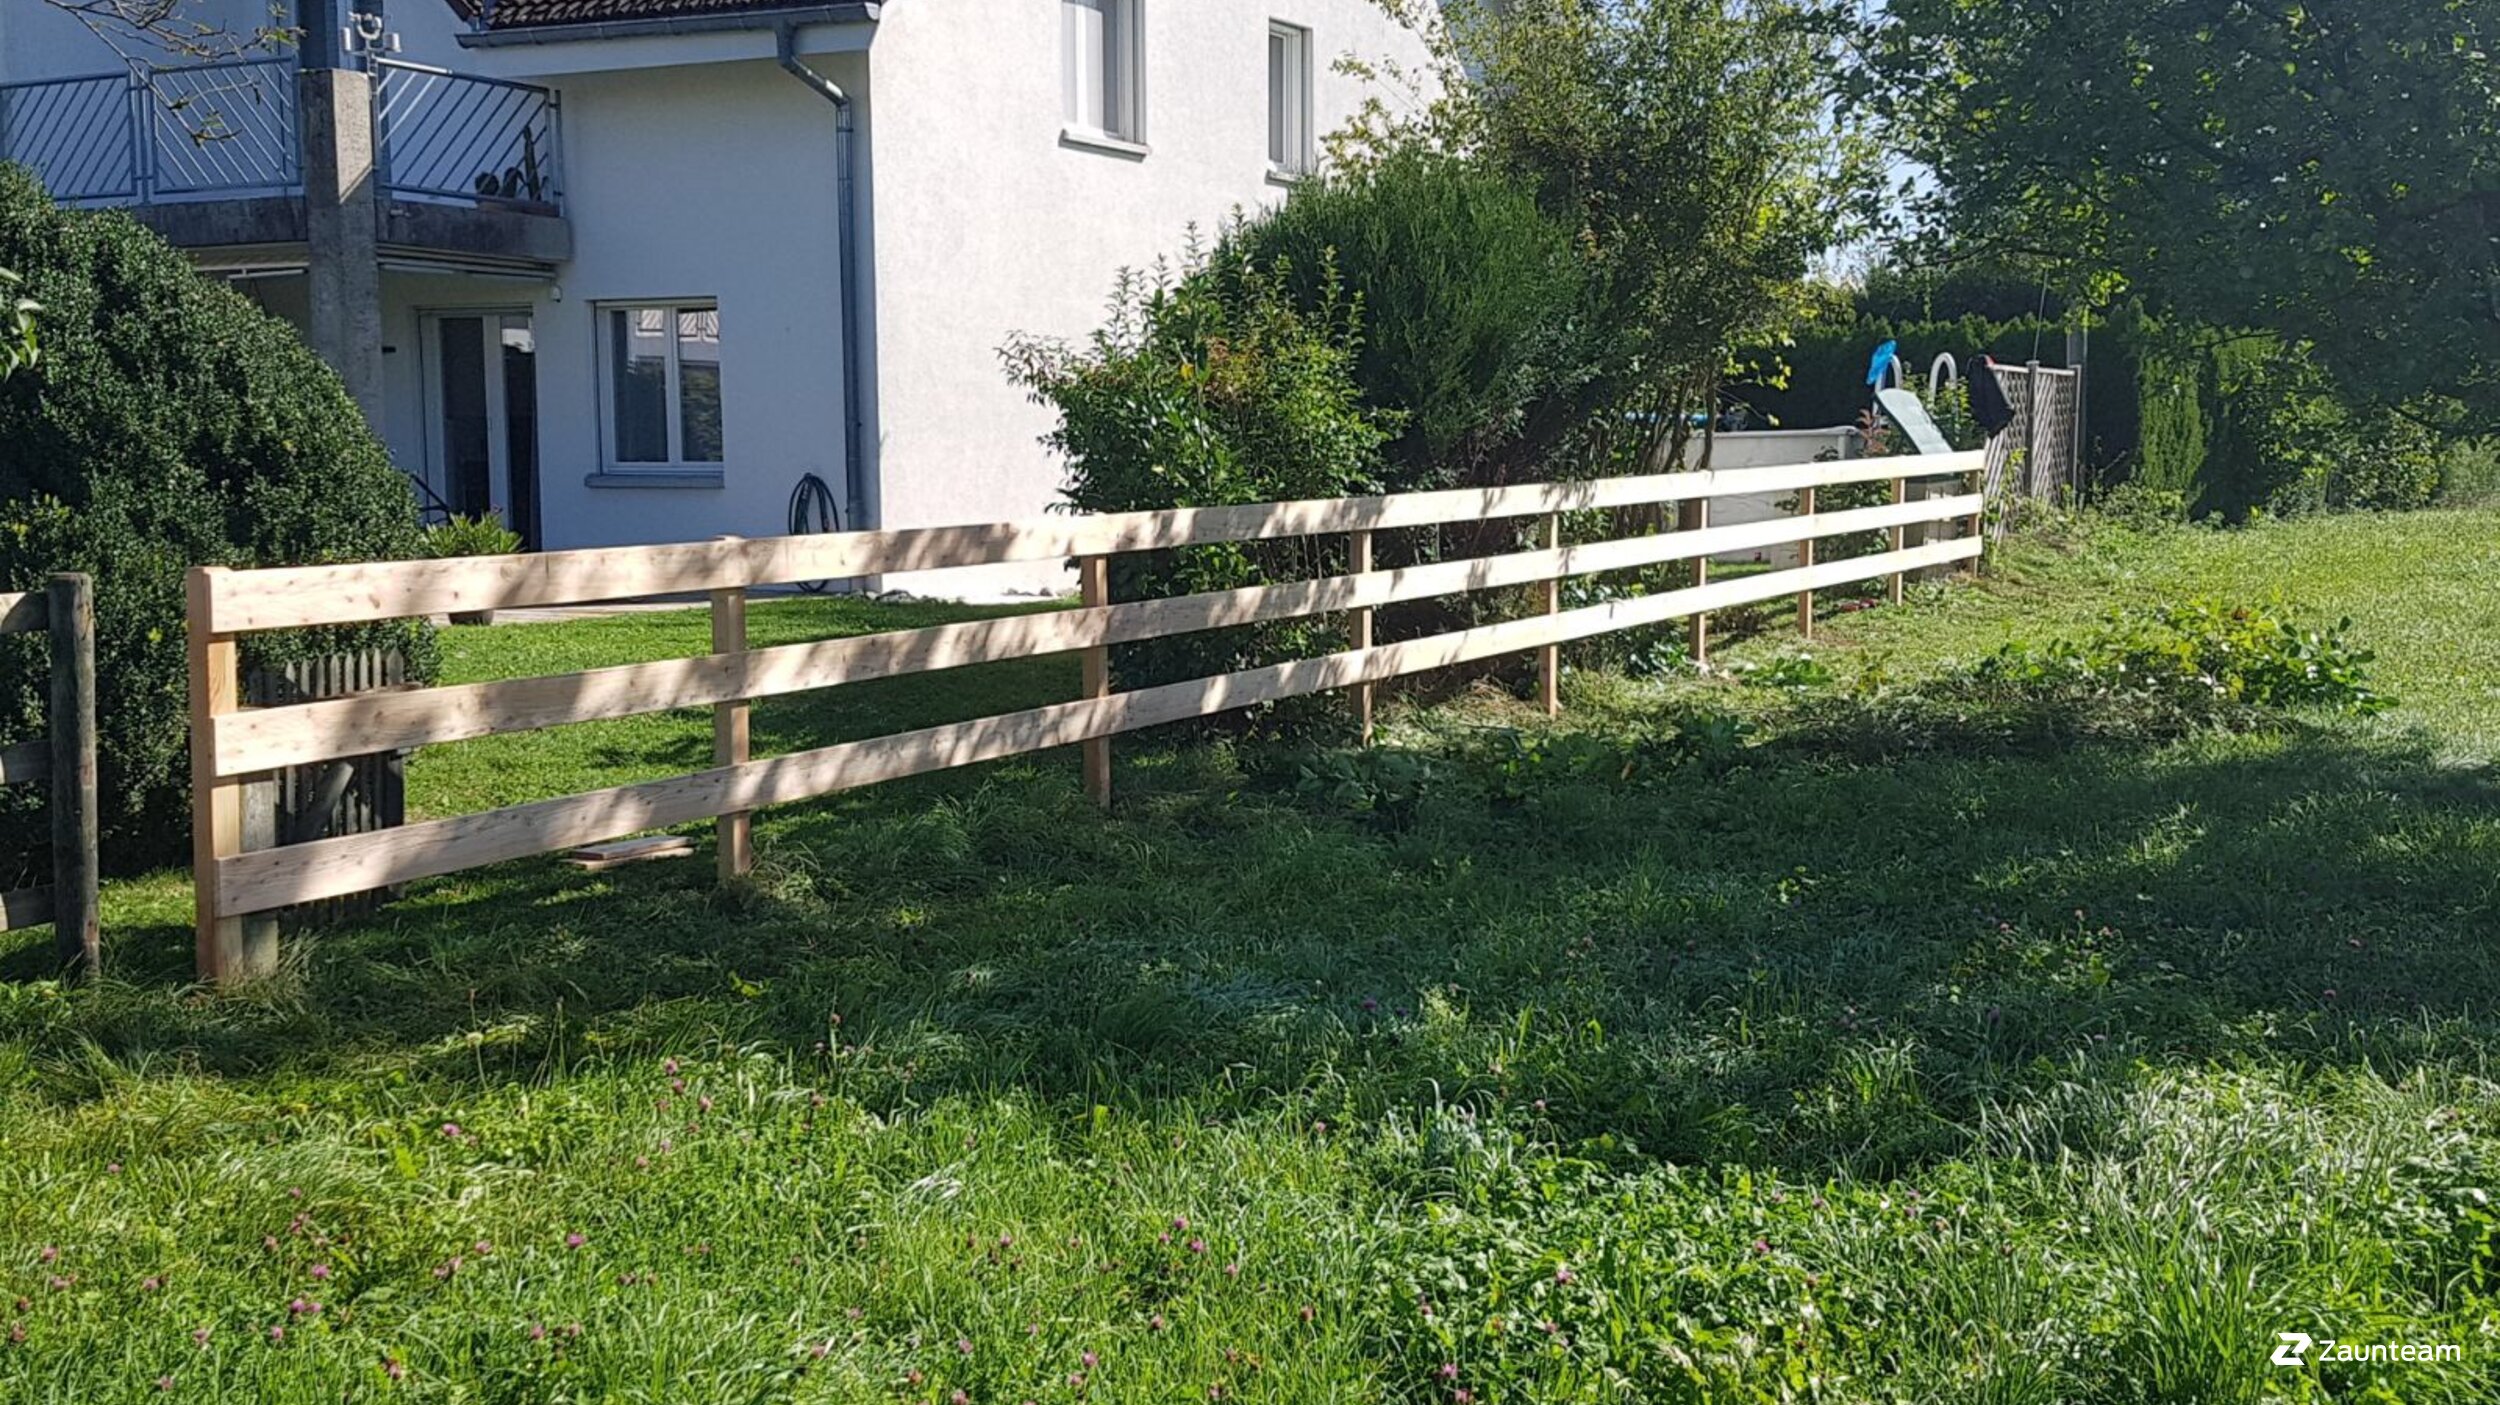 Clôture ranch de 2017 à 8500 Frauenfeld Suisse de Zaunteam Thurgau AG.